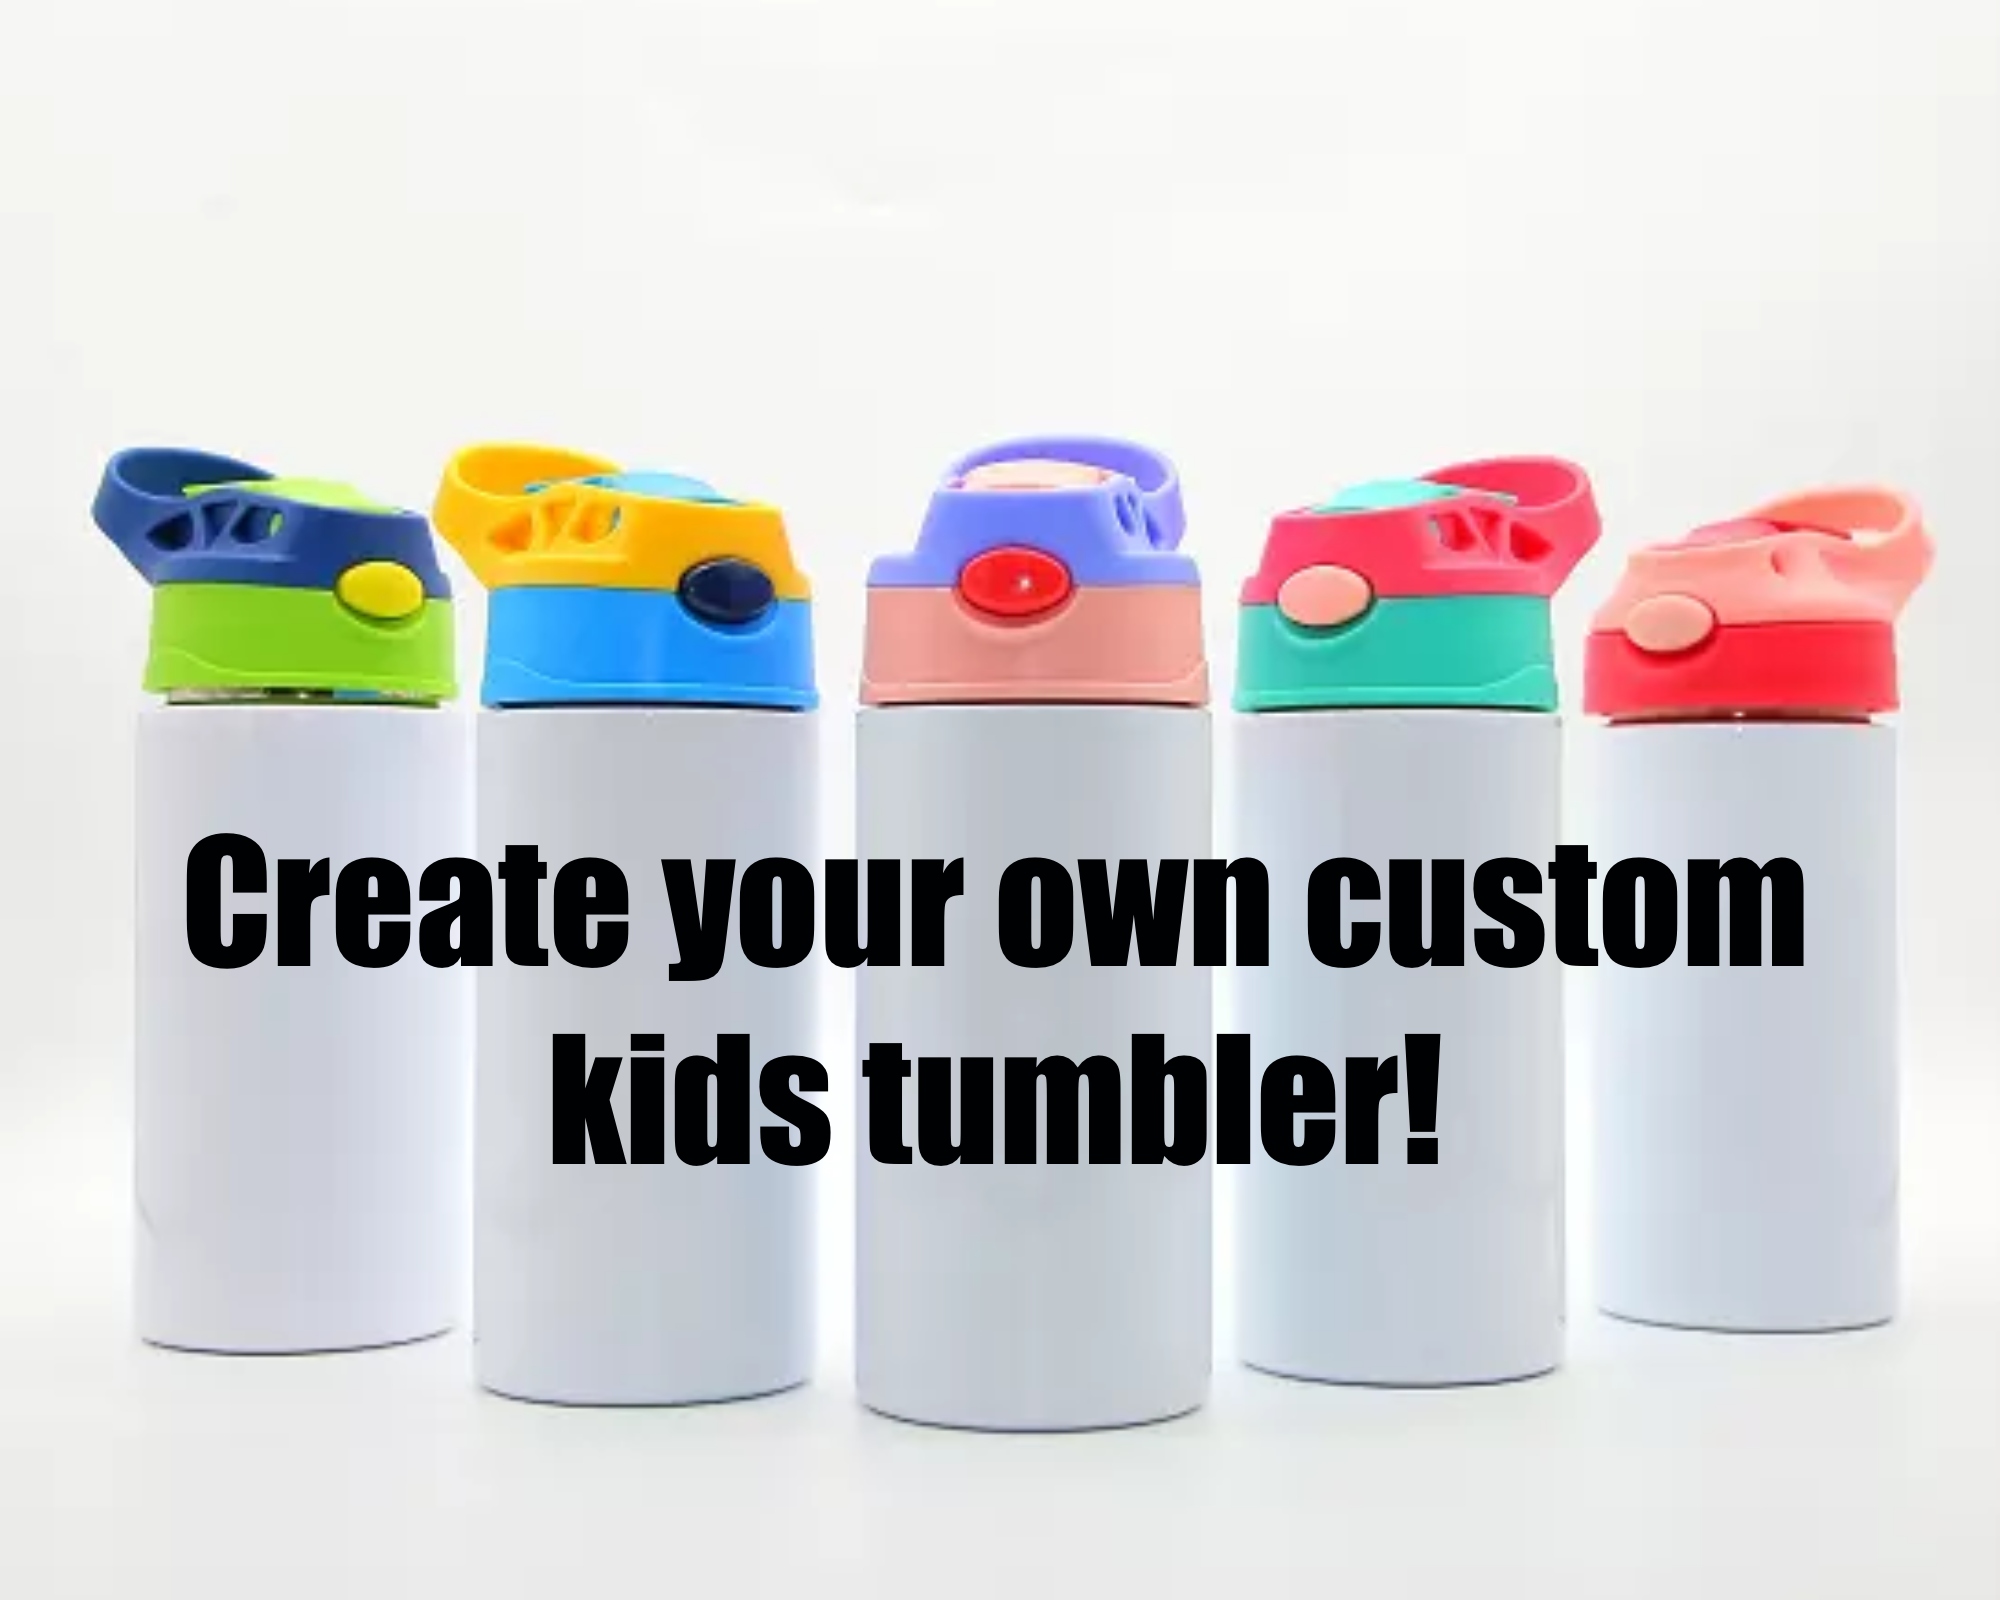 12oz Kids Tumbler – MakerFlo Crafts